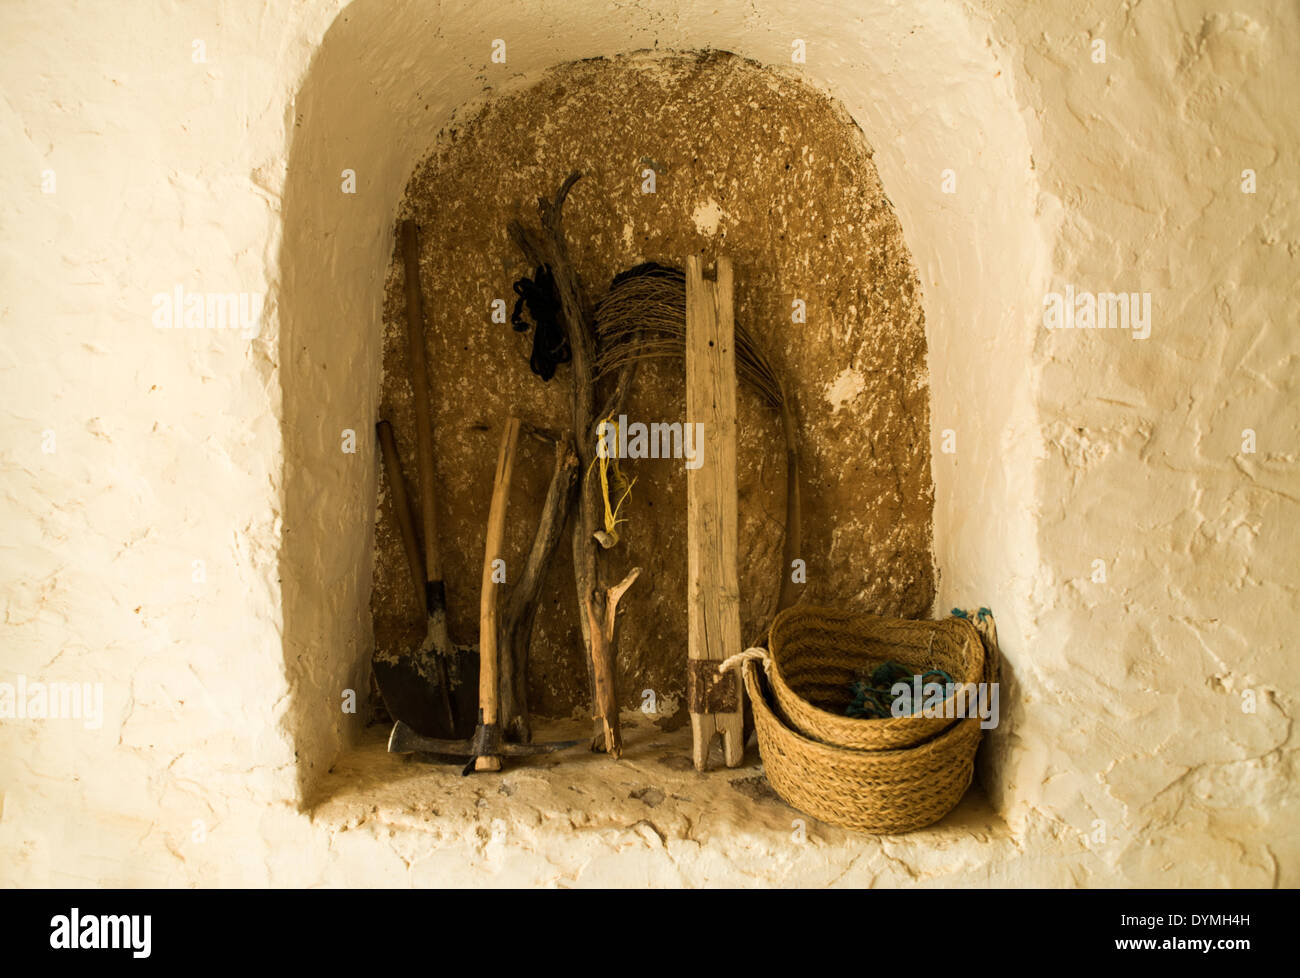 Strumenti utilizzati dalla comunità berbera in Tunisia che risalgono al 3000 a.C. Ci sono molte tribù sparse in tutta la Tunisia Foto Stock